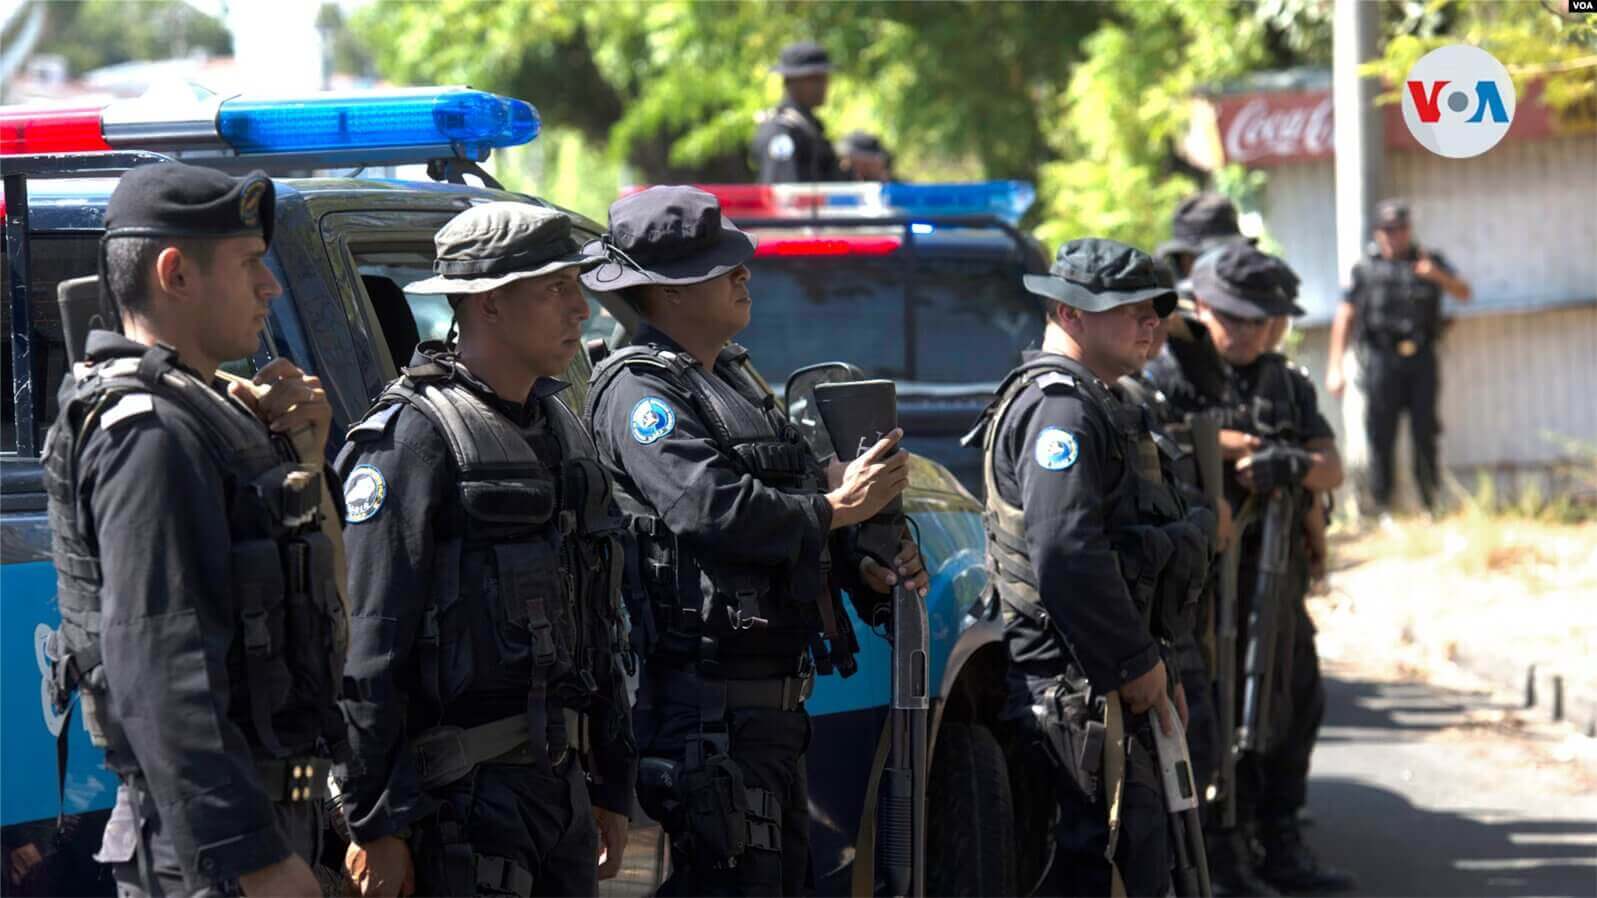 ARCHIVO. Un grupo de policías antimotines desplegados en Managua, capital de Nicaragua en 2021. Foto: VOA